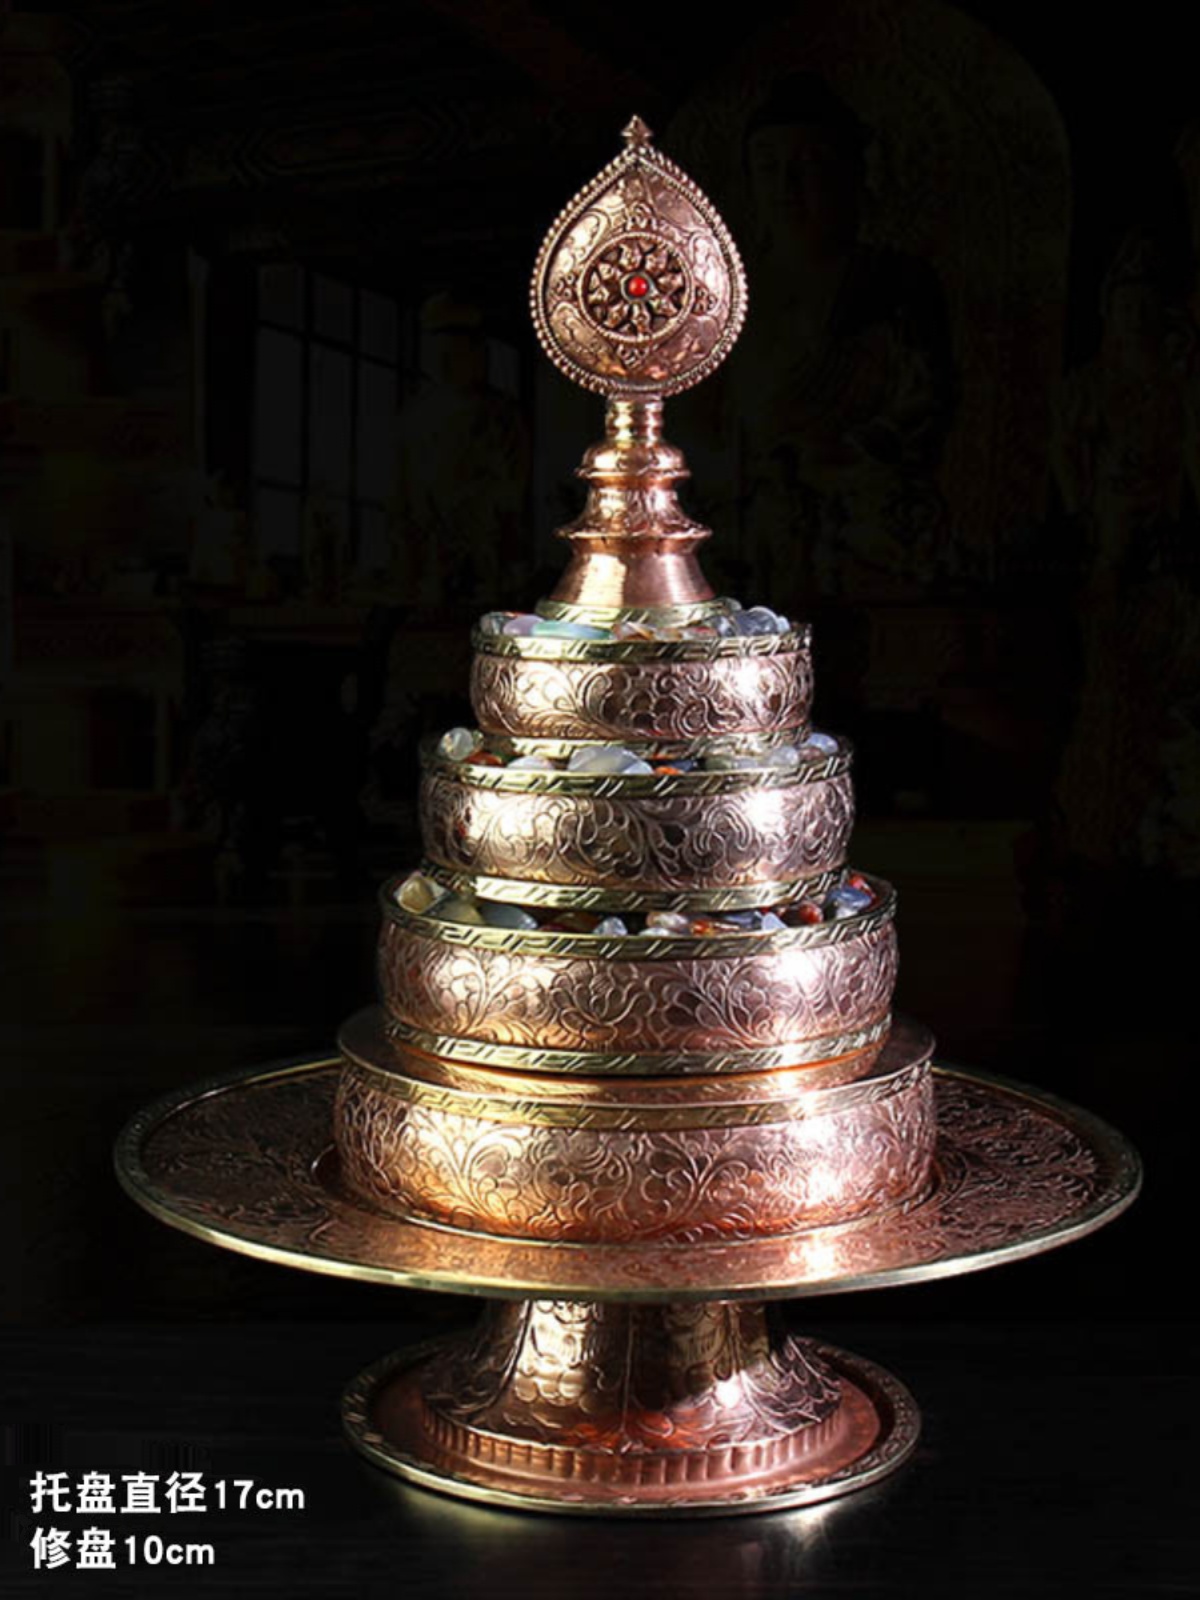 尼泊尔手工铜制雕花曼扎盘曼达盘曼茶罗修盘供器资粮雕刻小号17cm